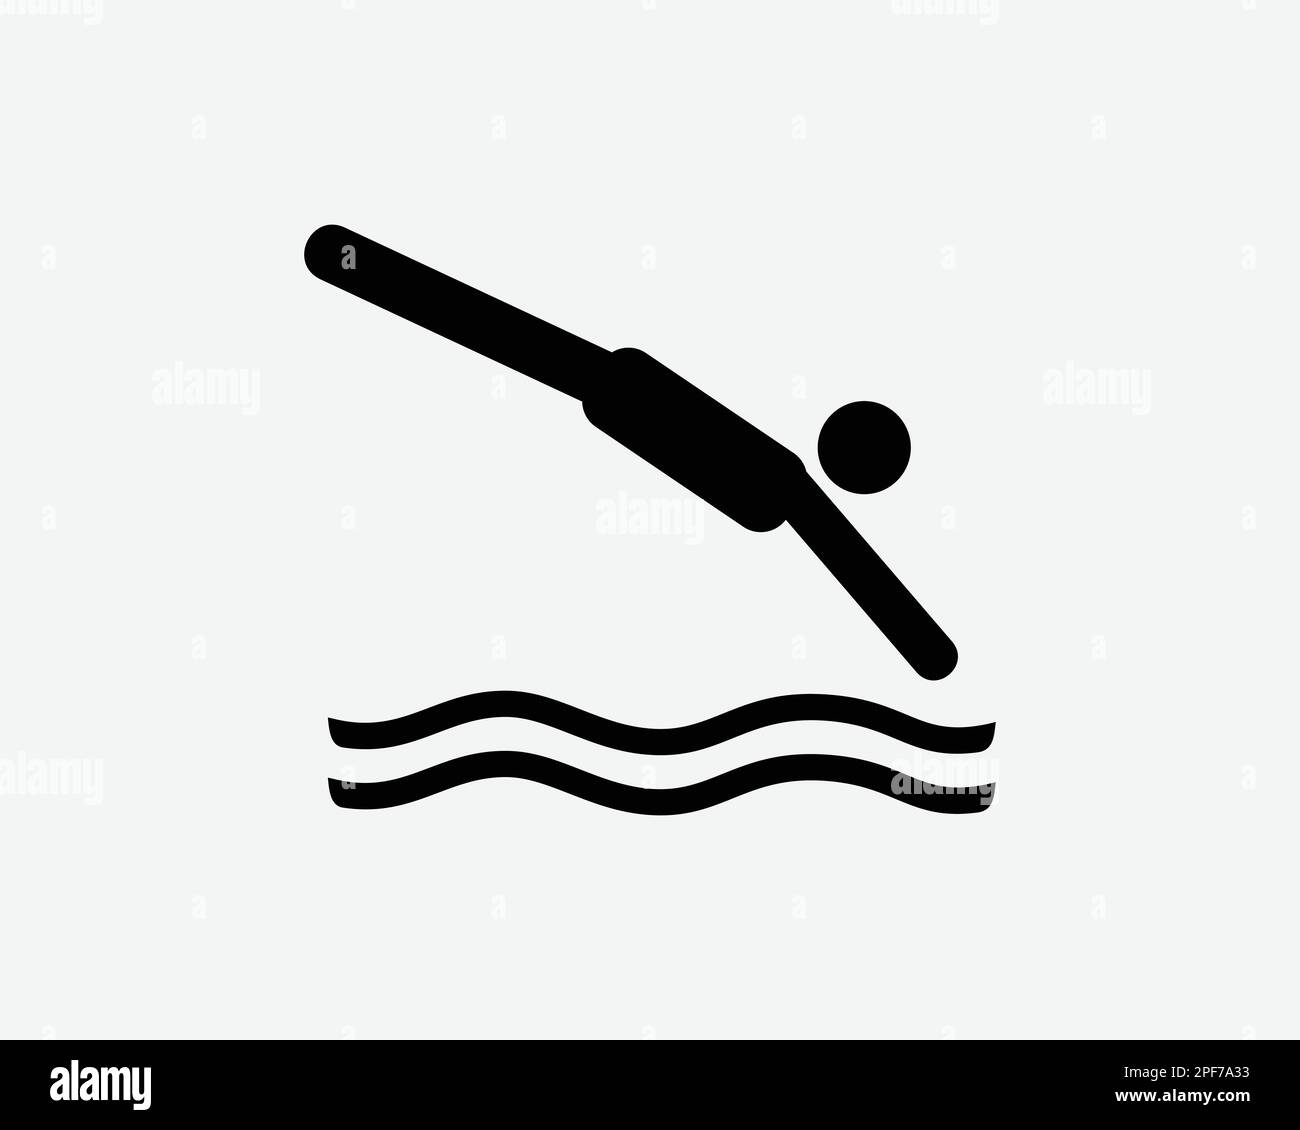 Tauchen Ikone Mann Tauchen springt in den Wasserpool Schwimmen Vektor Schwarzweiß Silhouettensymbol Grafik Clipart Kunstwerke Illustration Piktogr Stock Vektor